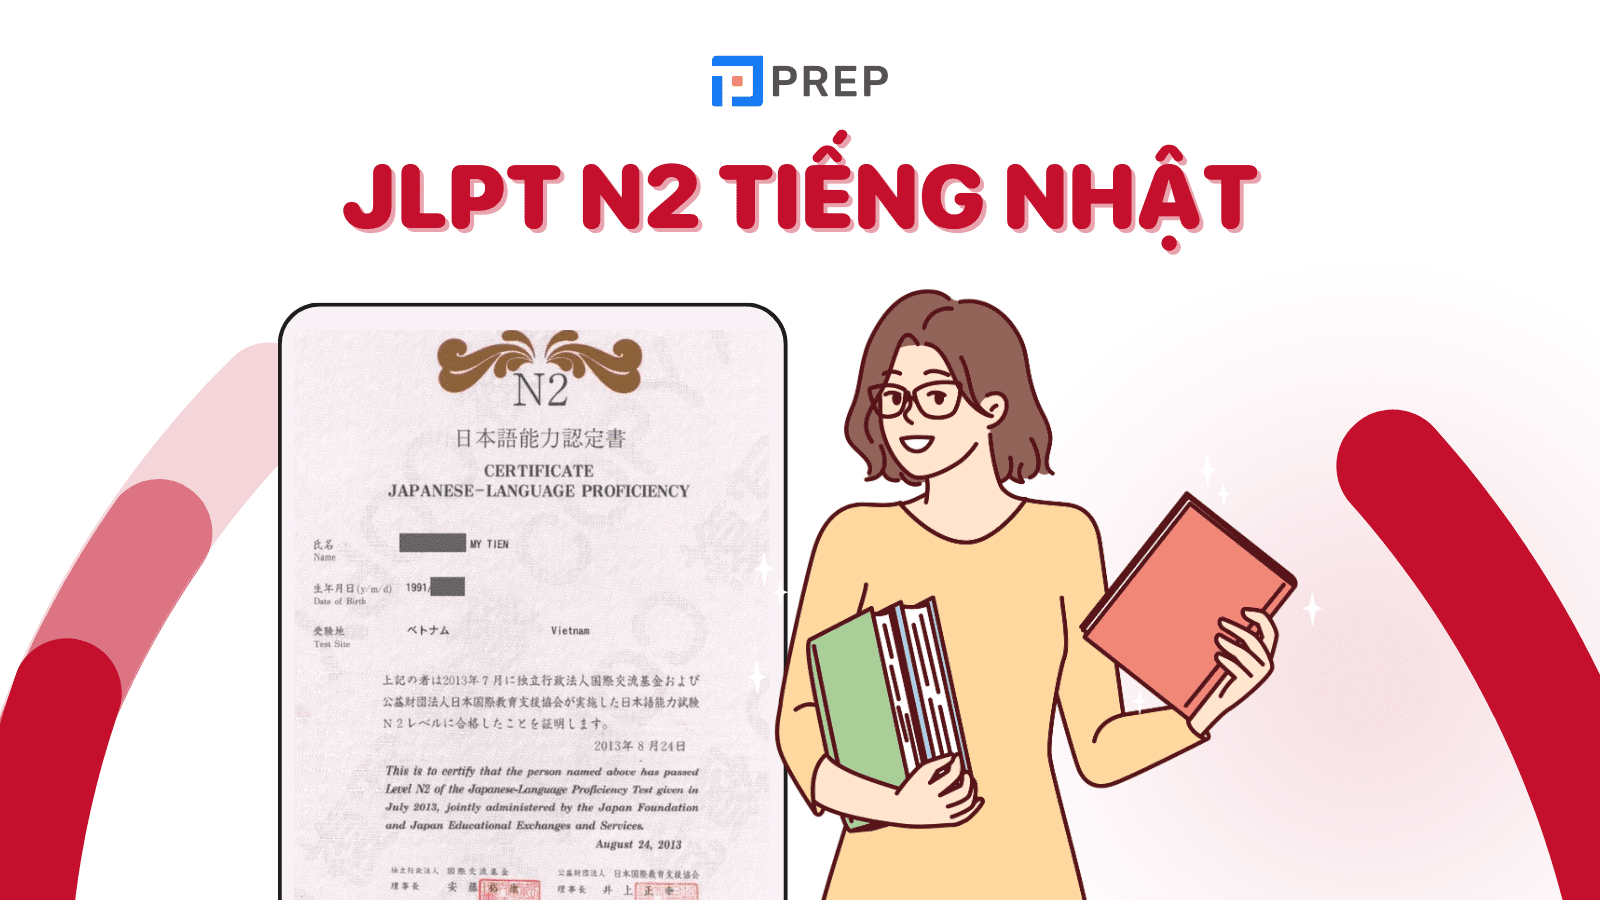 JLPT N2 là gì? Thông tin về bài thi năng lực Ngoại ngữ tiếng Nhật N2